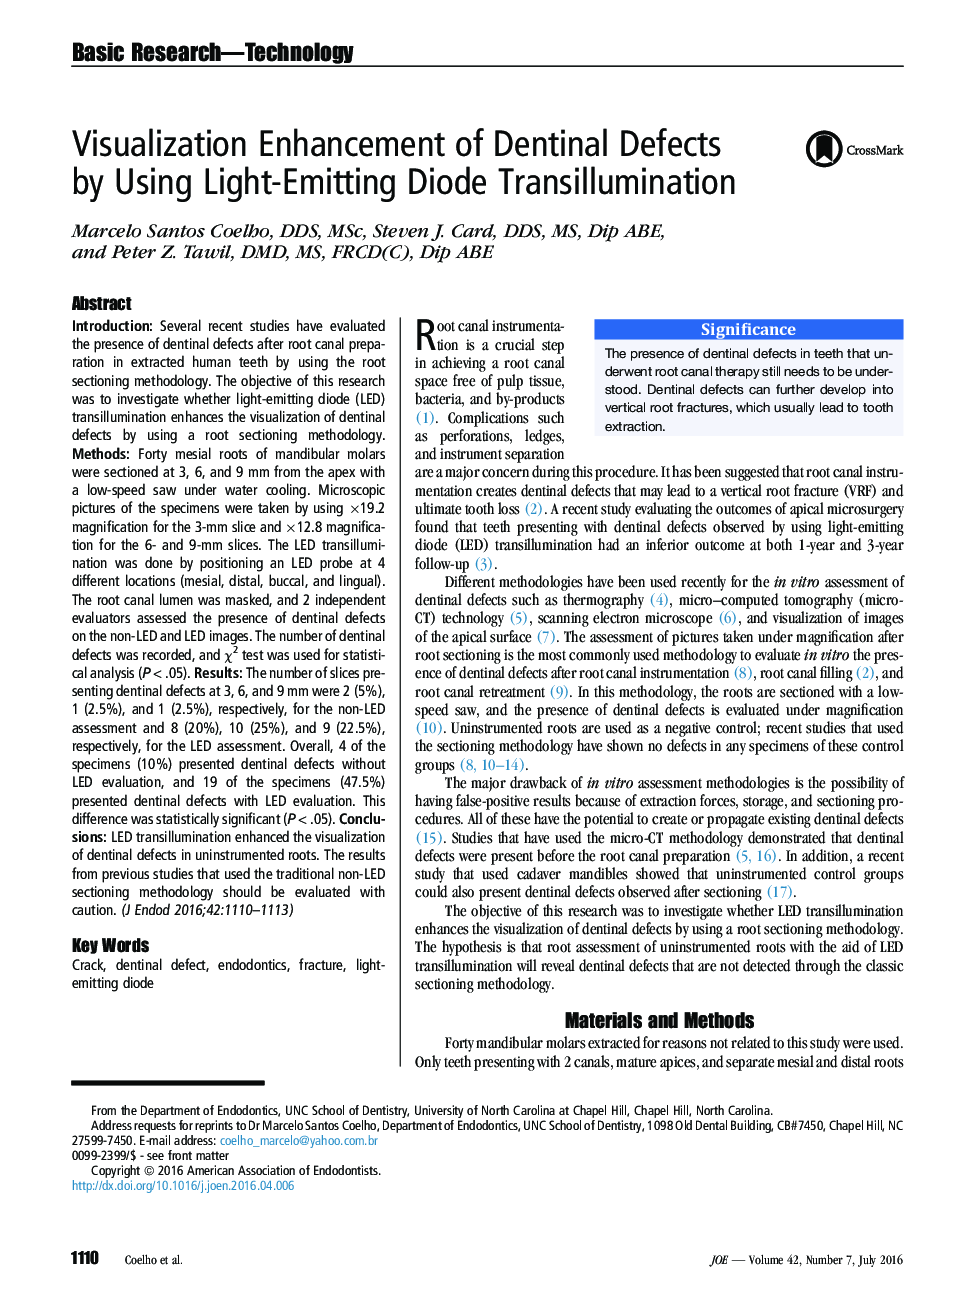 افزایش تجسم نقص دندان با استفاده از دیود ساطع نور Transillumination